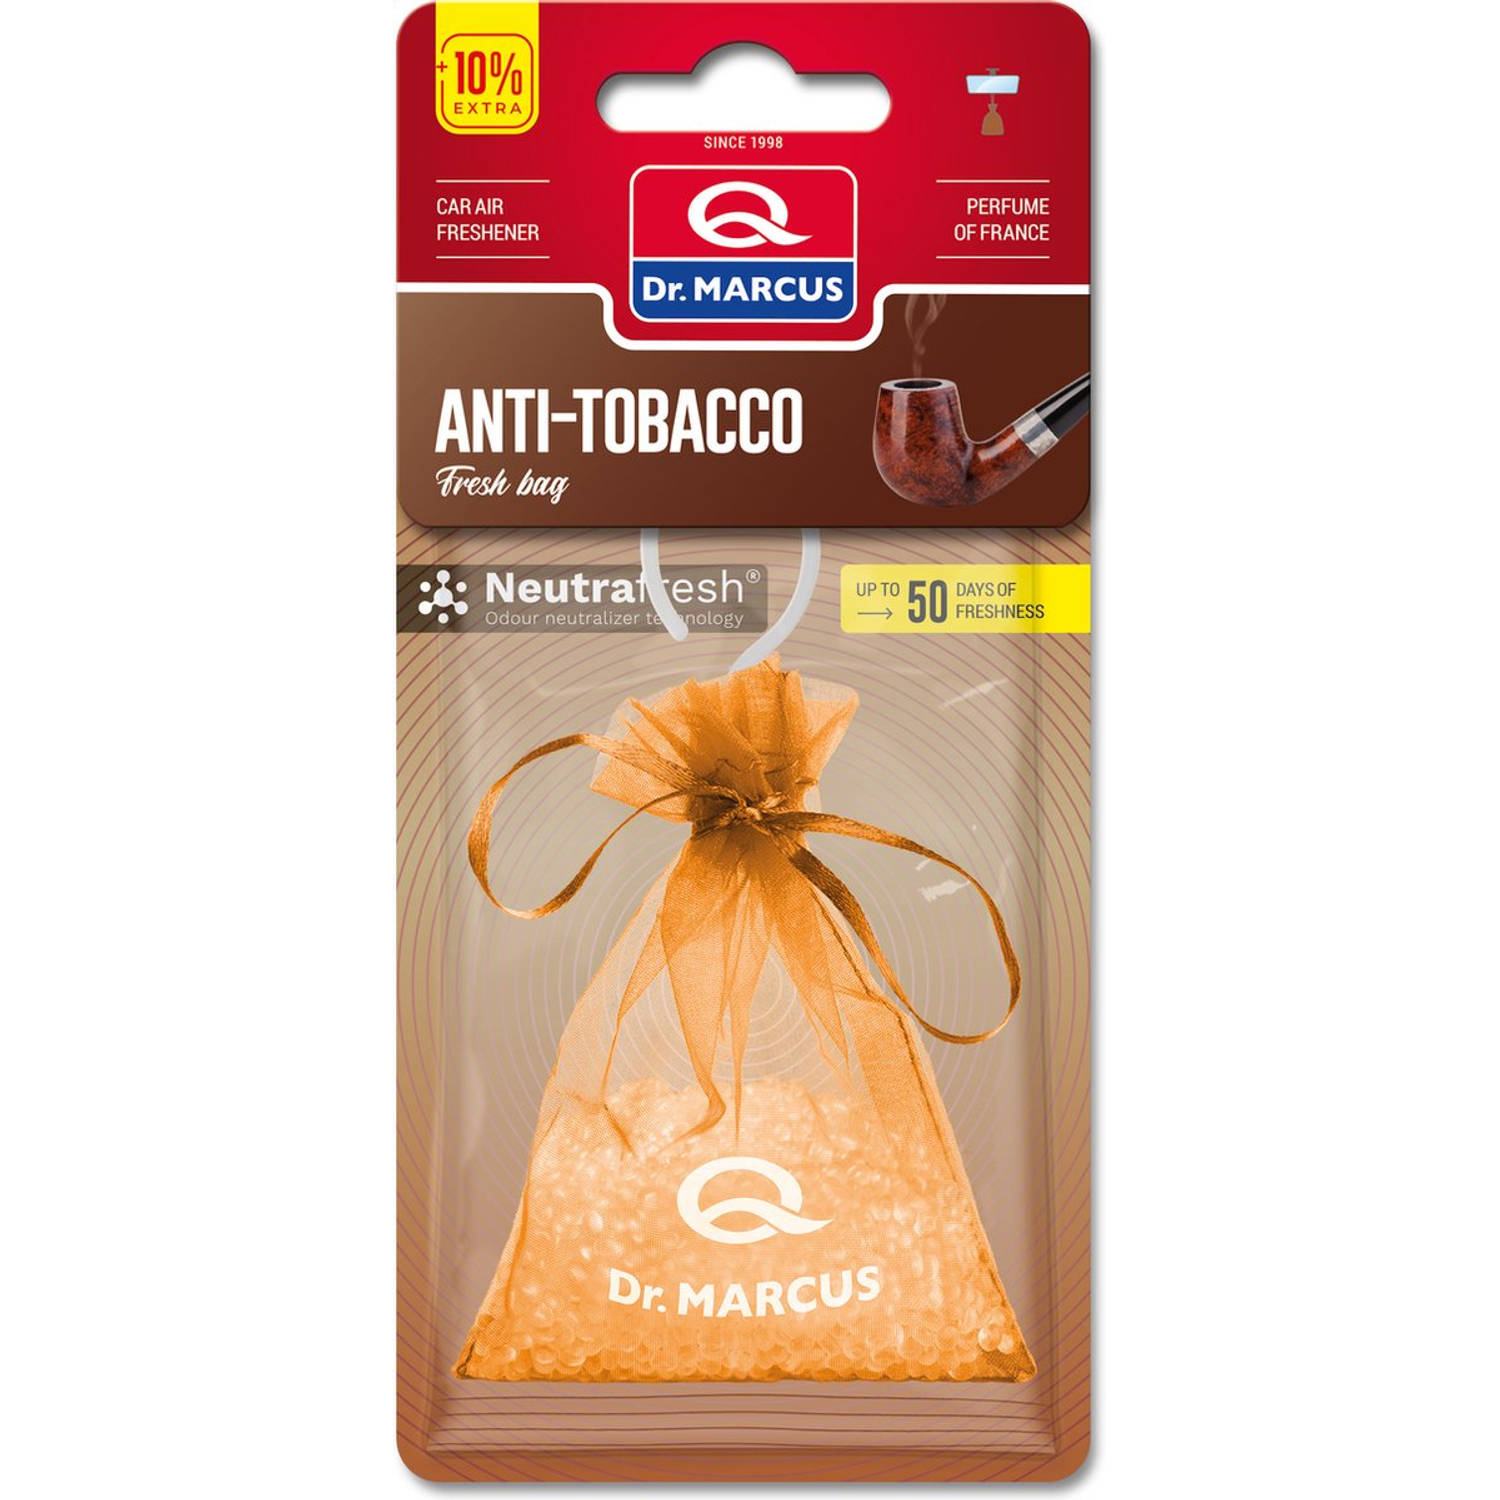 Dr. Marcus Anti-Tobacco Fresh bag luchtverfrisser met neutrafresh technologie 20 Gram